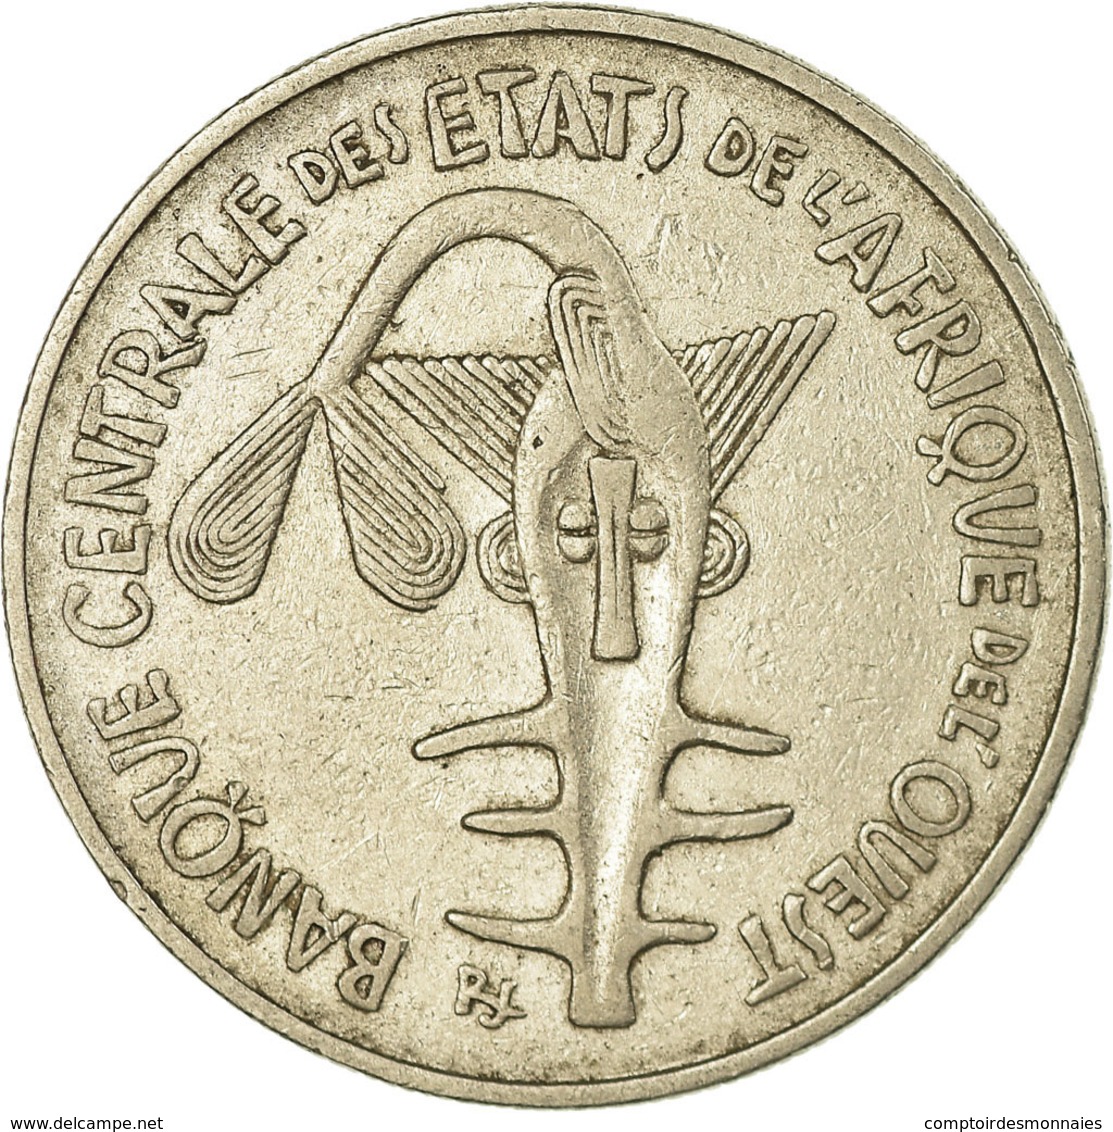 Monnaie, West African States, 100 Francs, 1974, TTB, Nickel, KM:4 - Côte-d'Ivoire